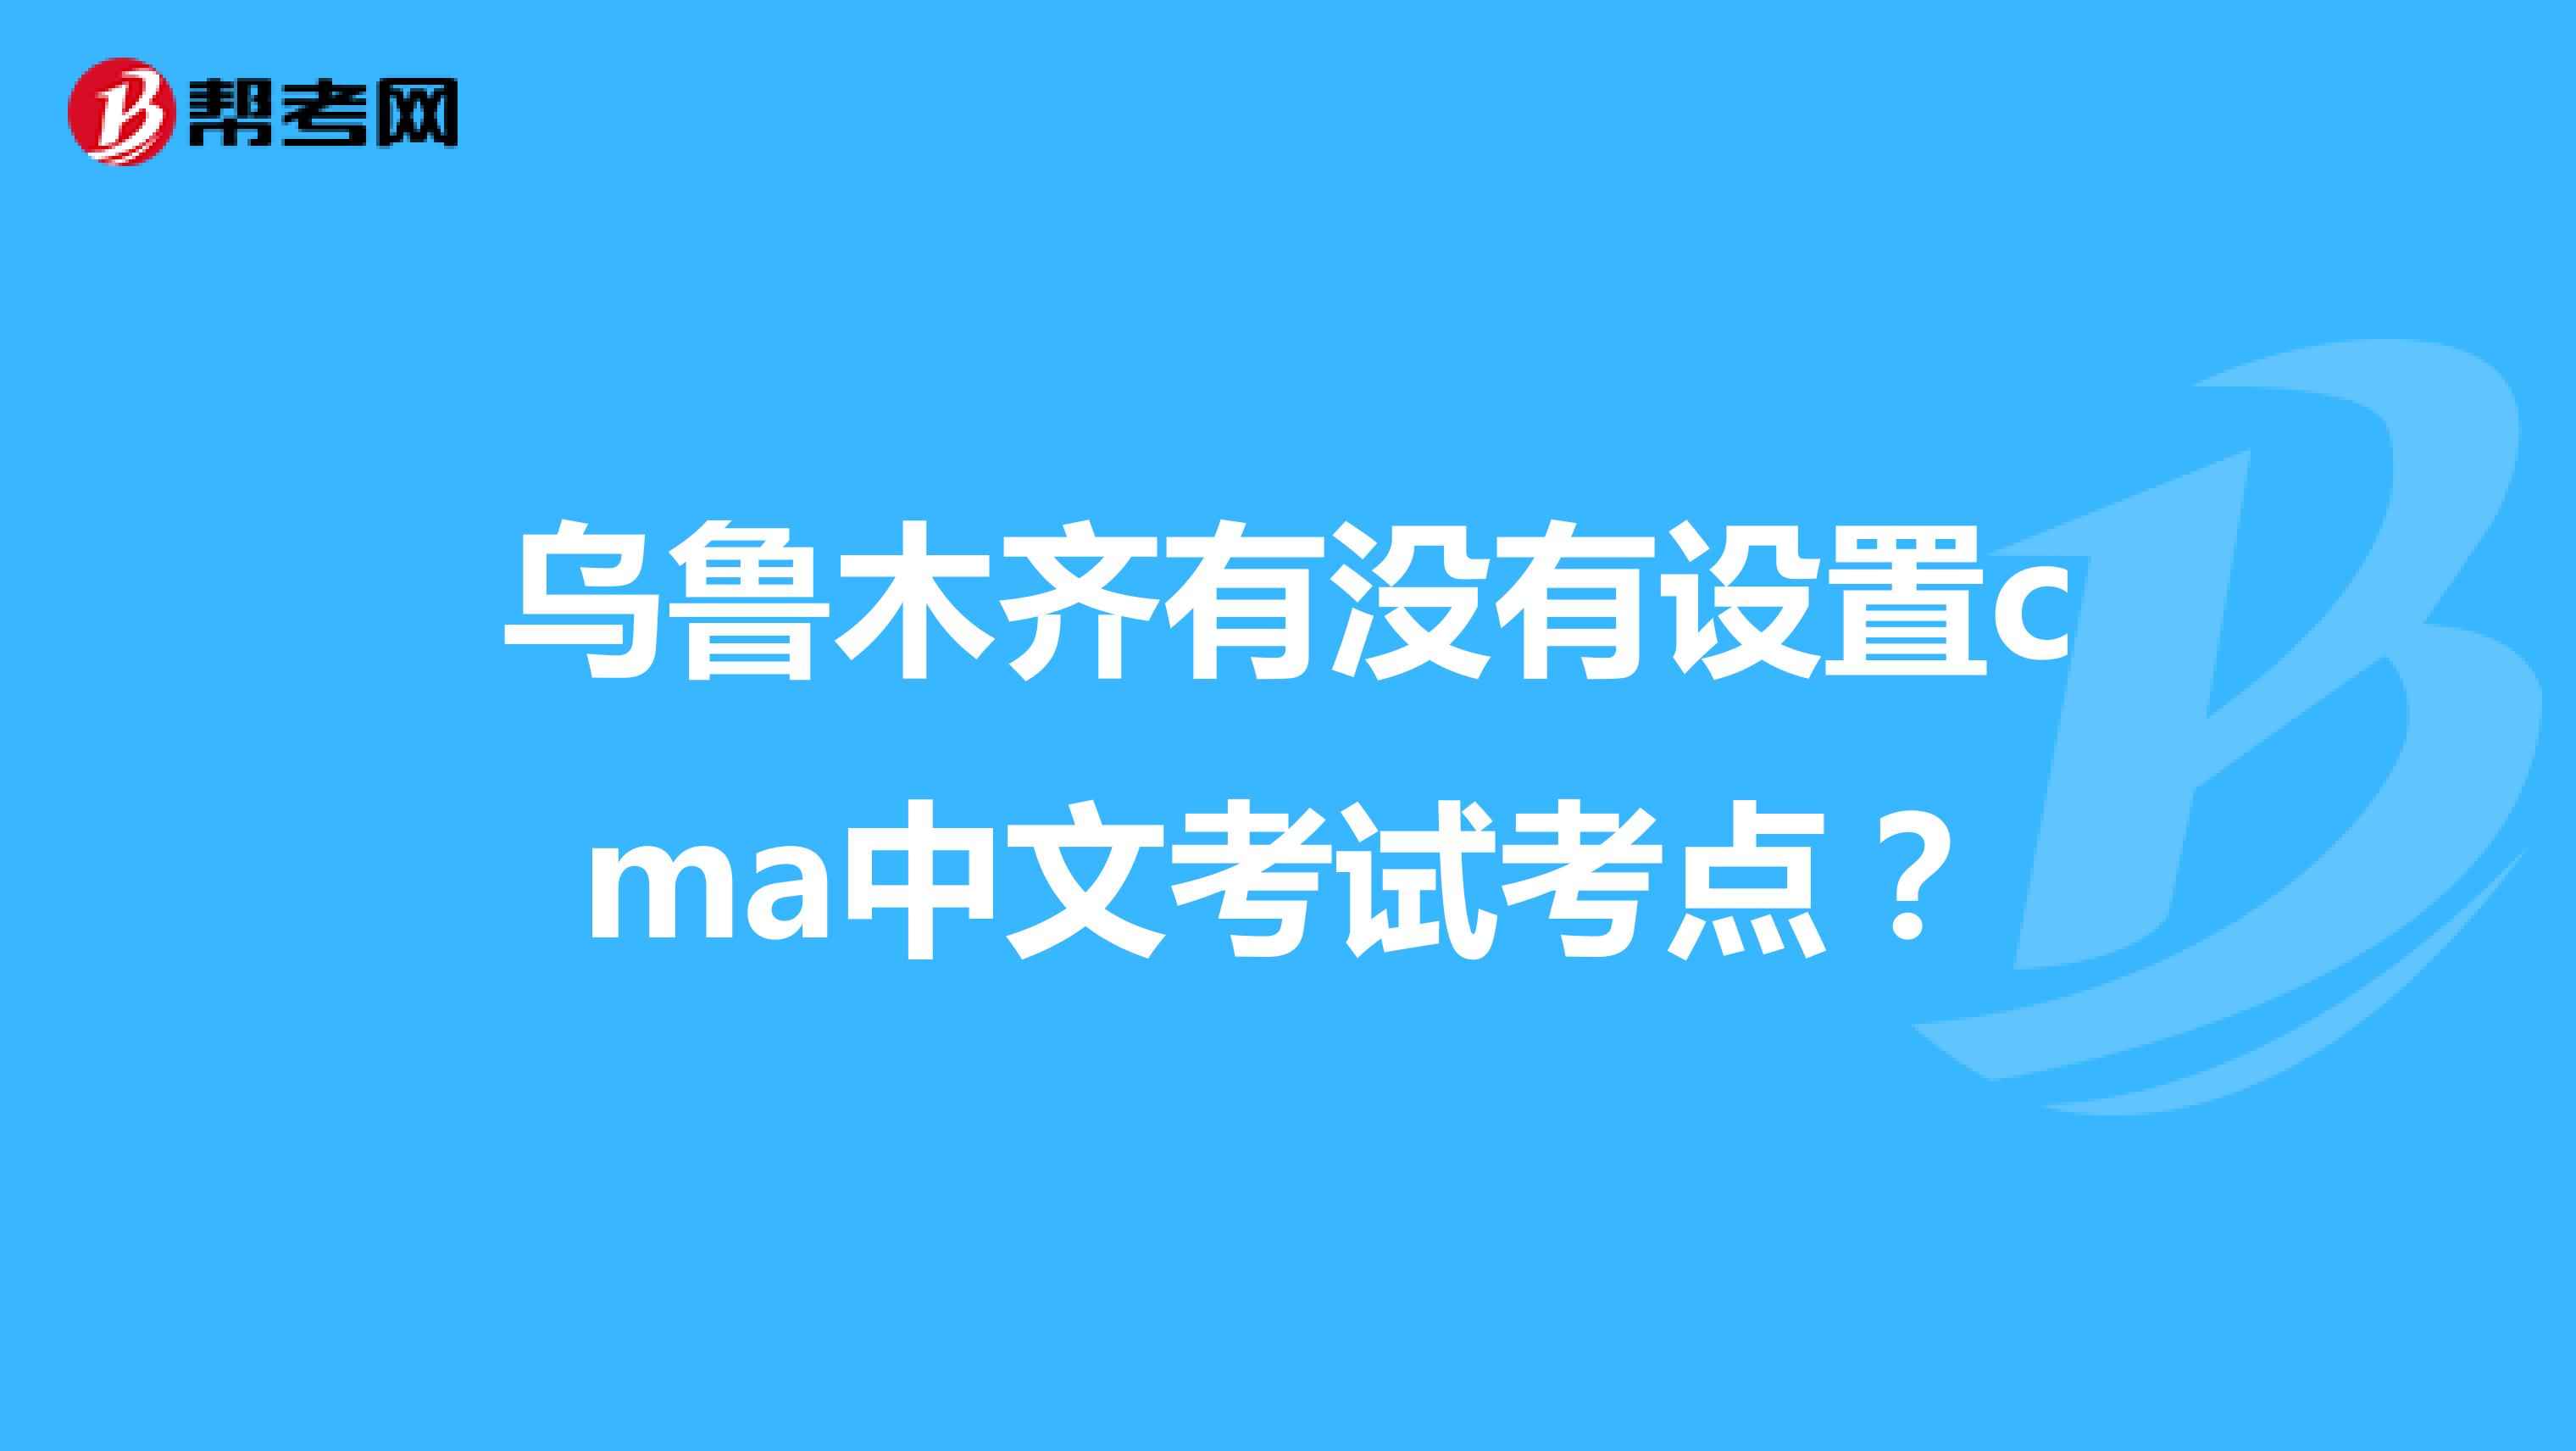 乌鲁木齐有没有设置cma中文考试考点？